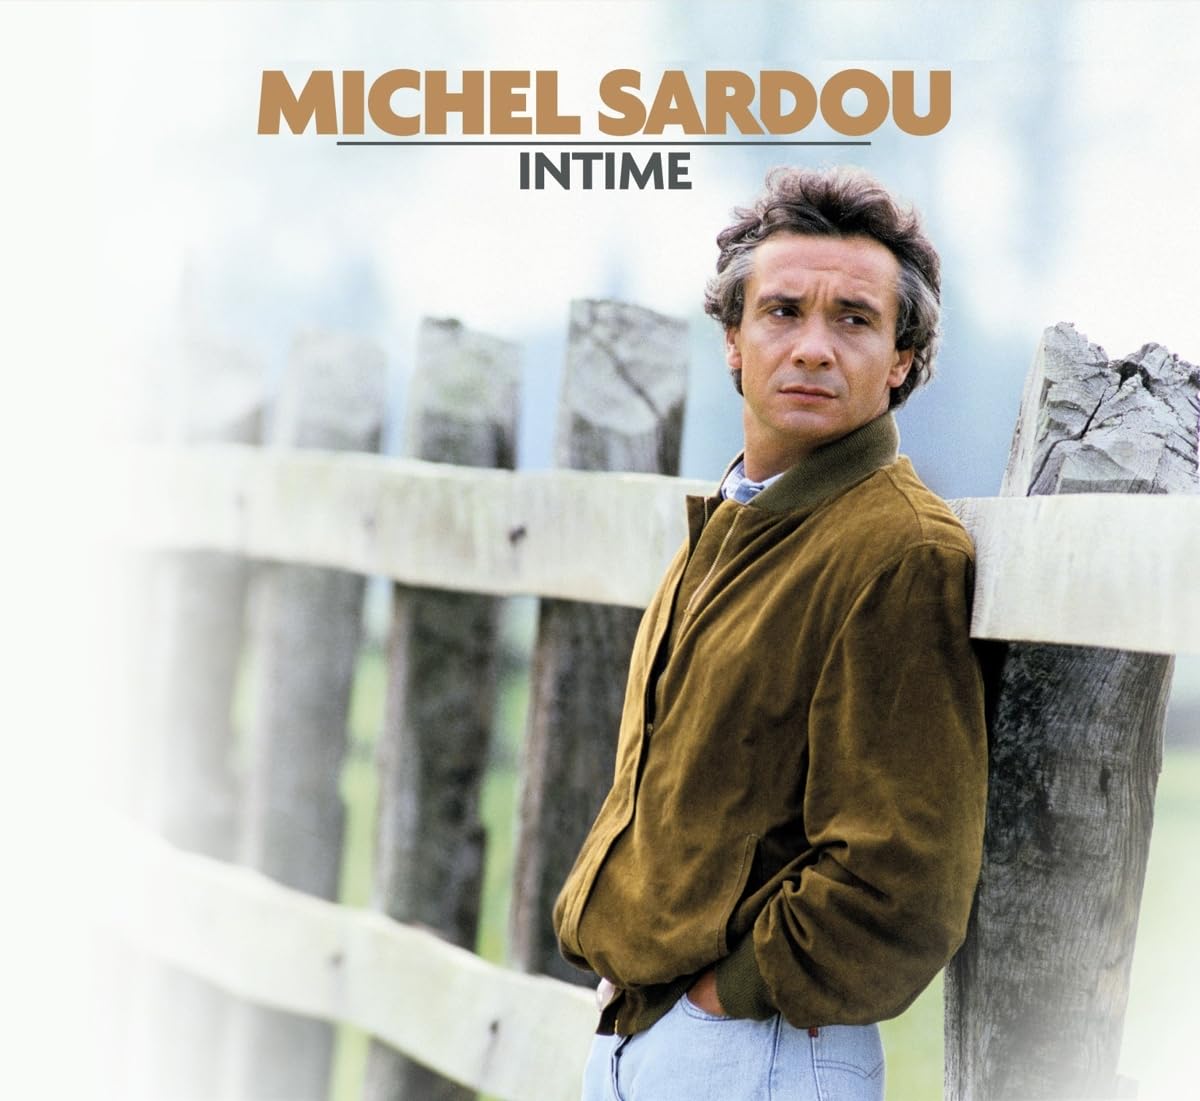 Michel Sardou Sardou 66 - Nouveaux Enregistrements CD VG++ Condition